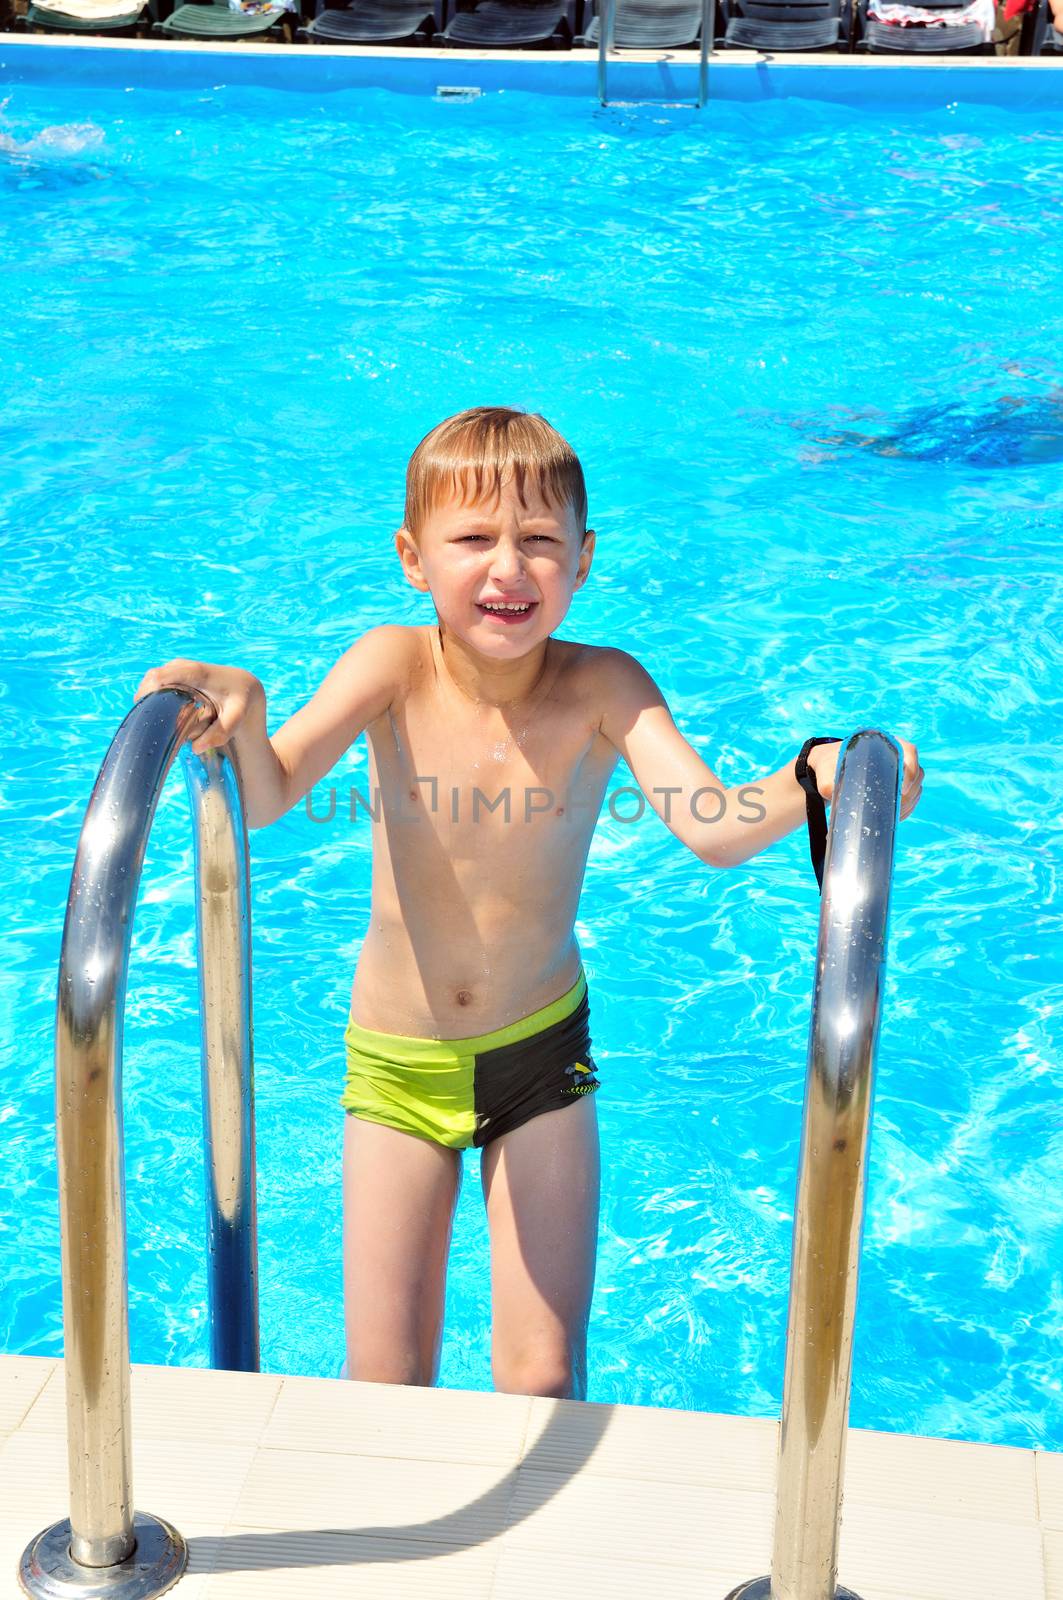 wet boy in pool by Reana